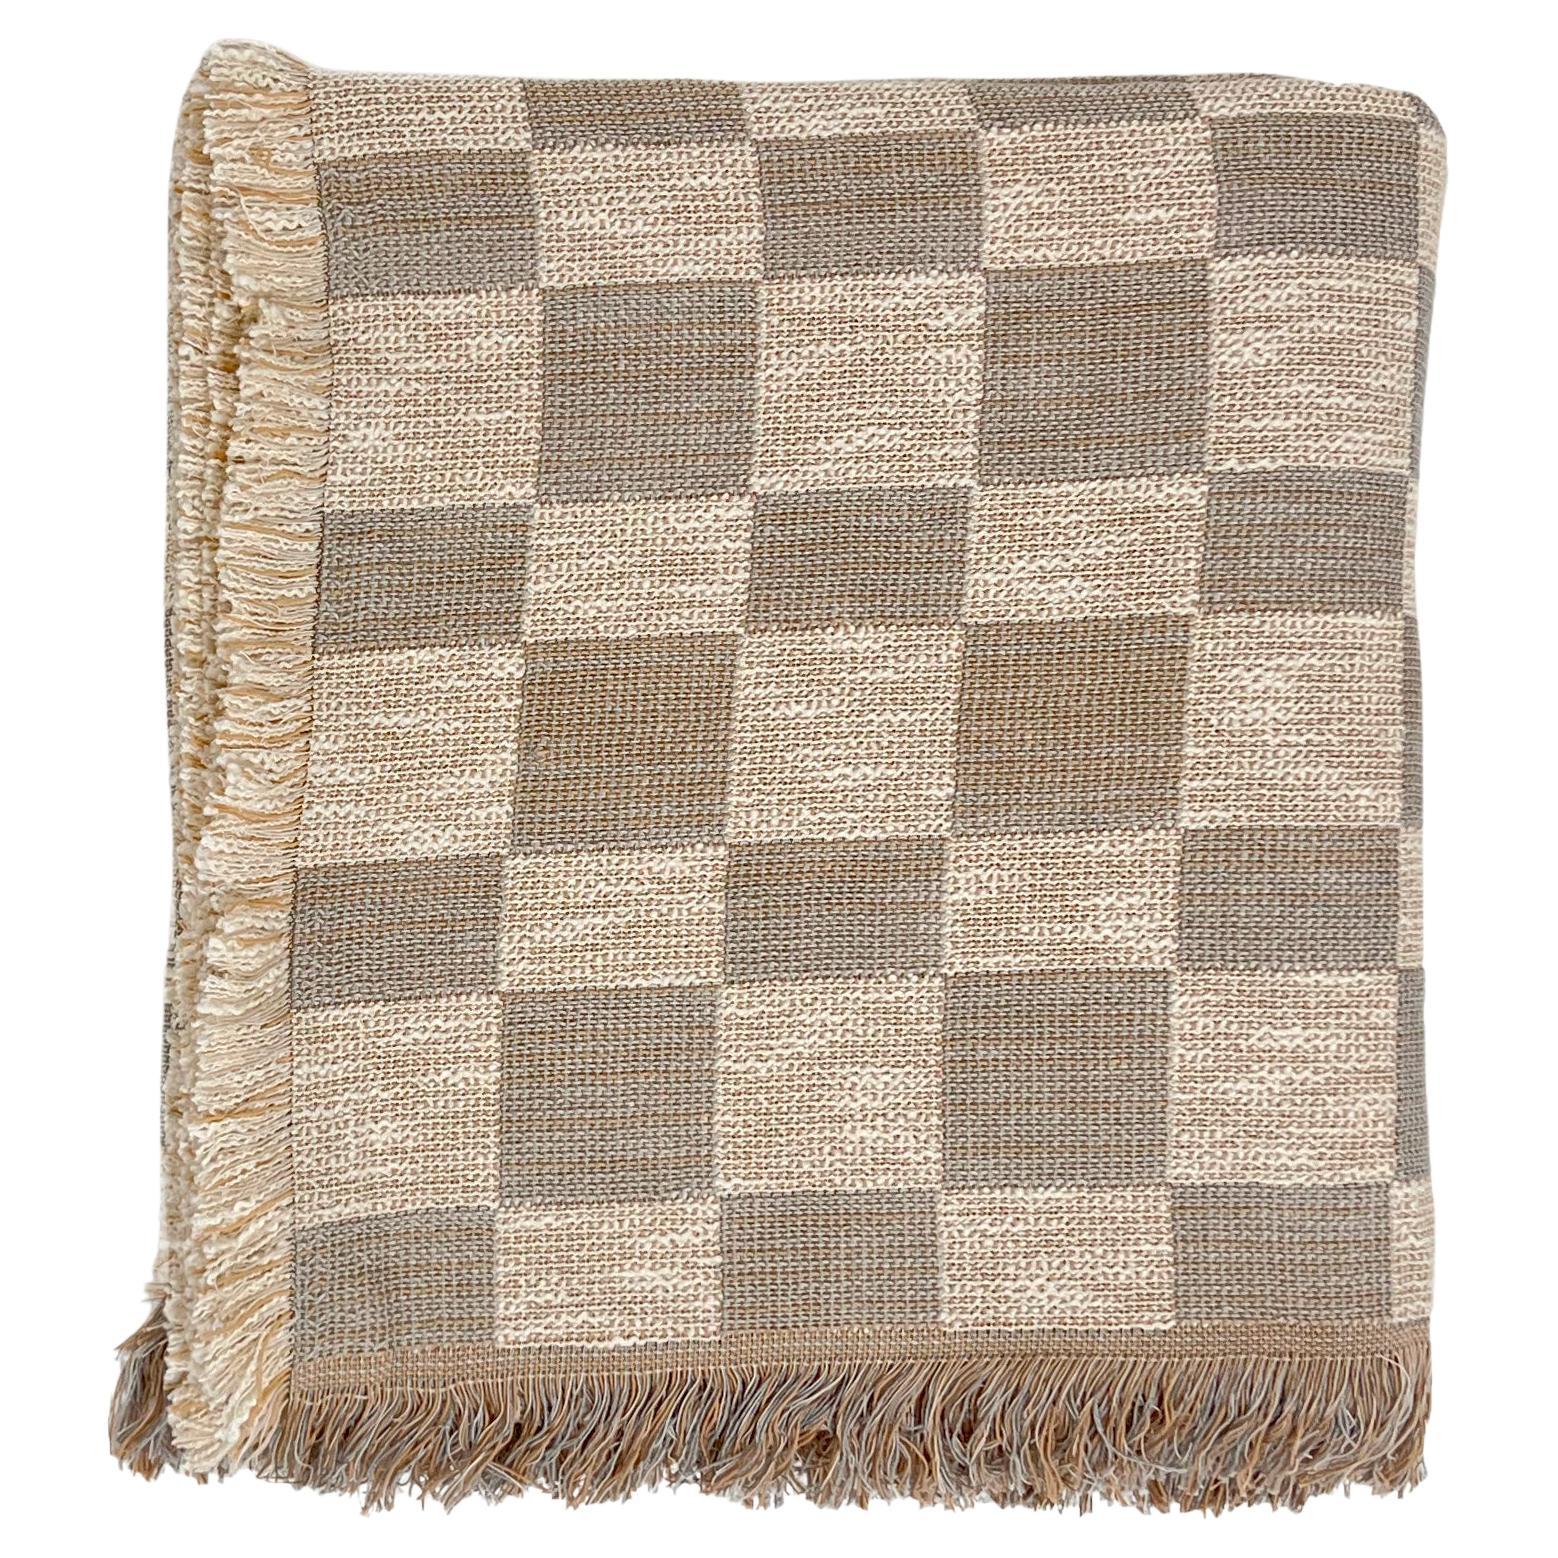 Gemusterte Überdeckendecke aus gewebter Baumwolle von Folk Textiles (Mariana / Stone)